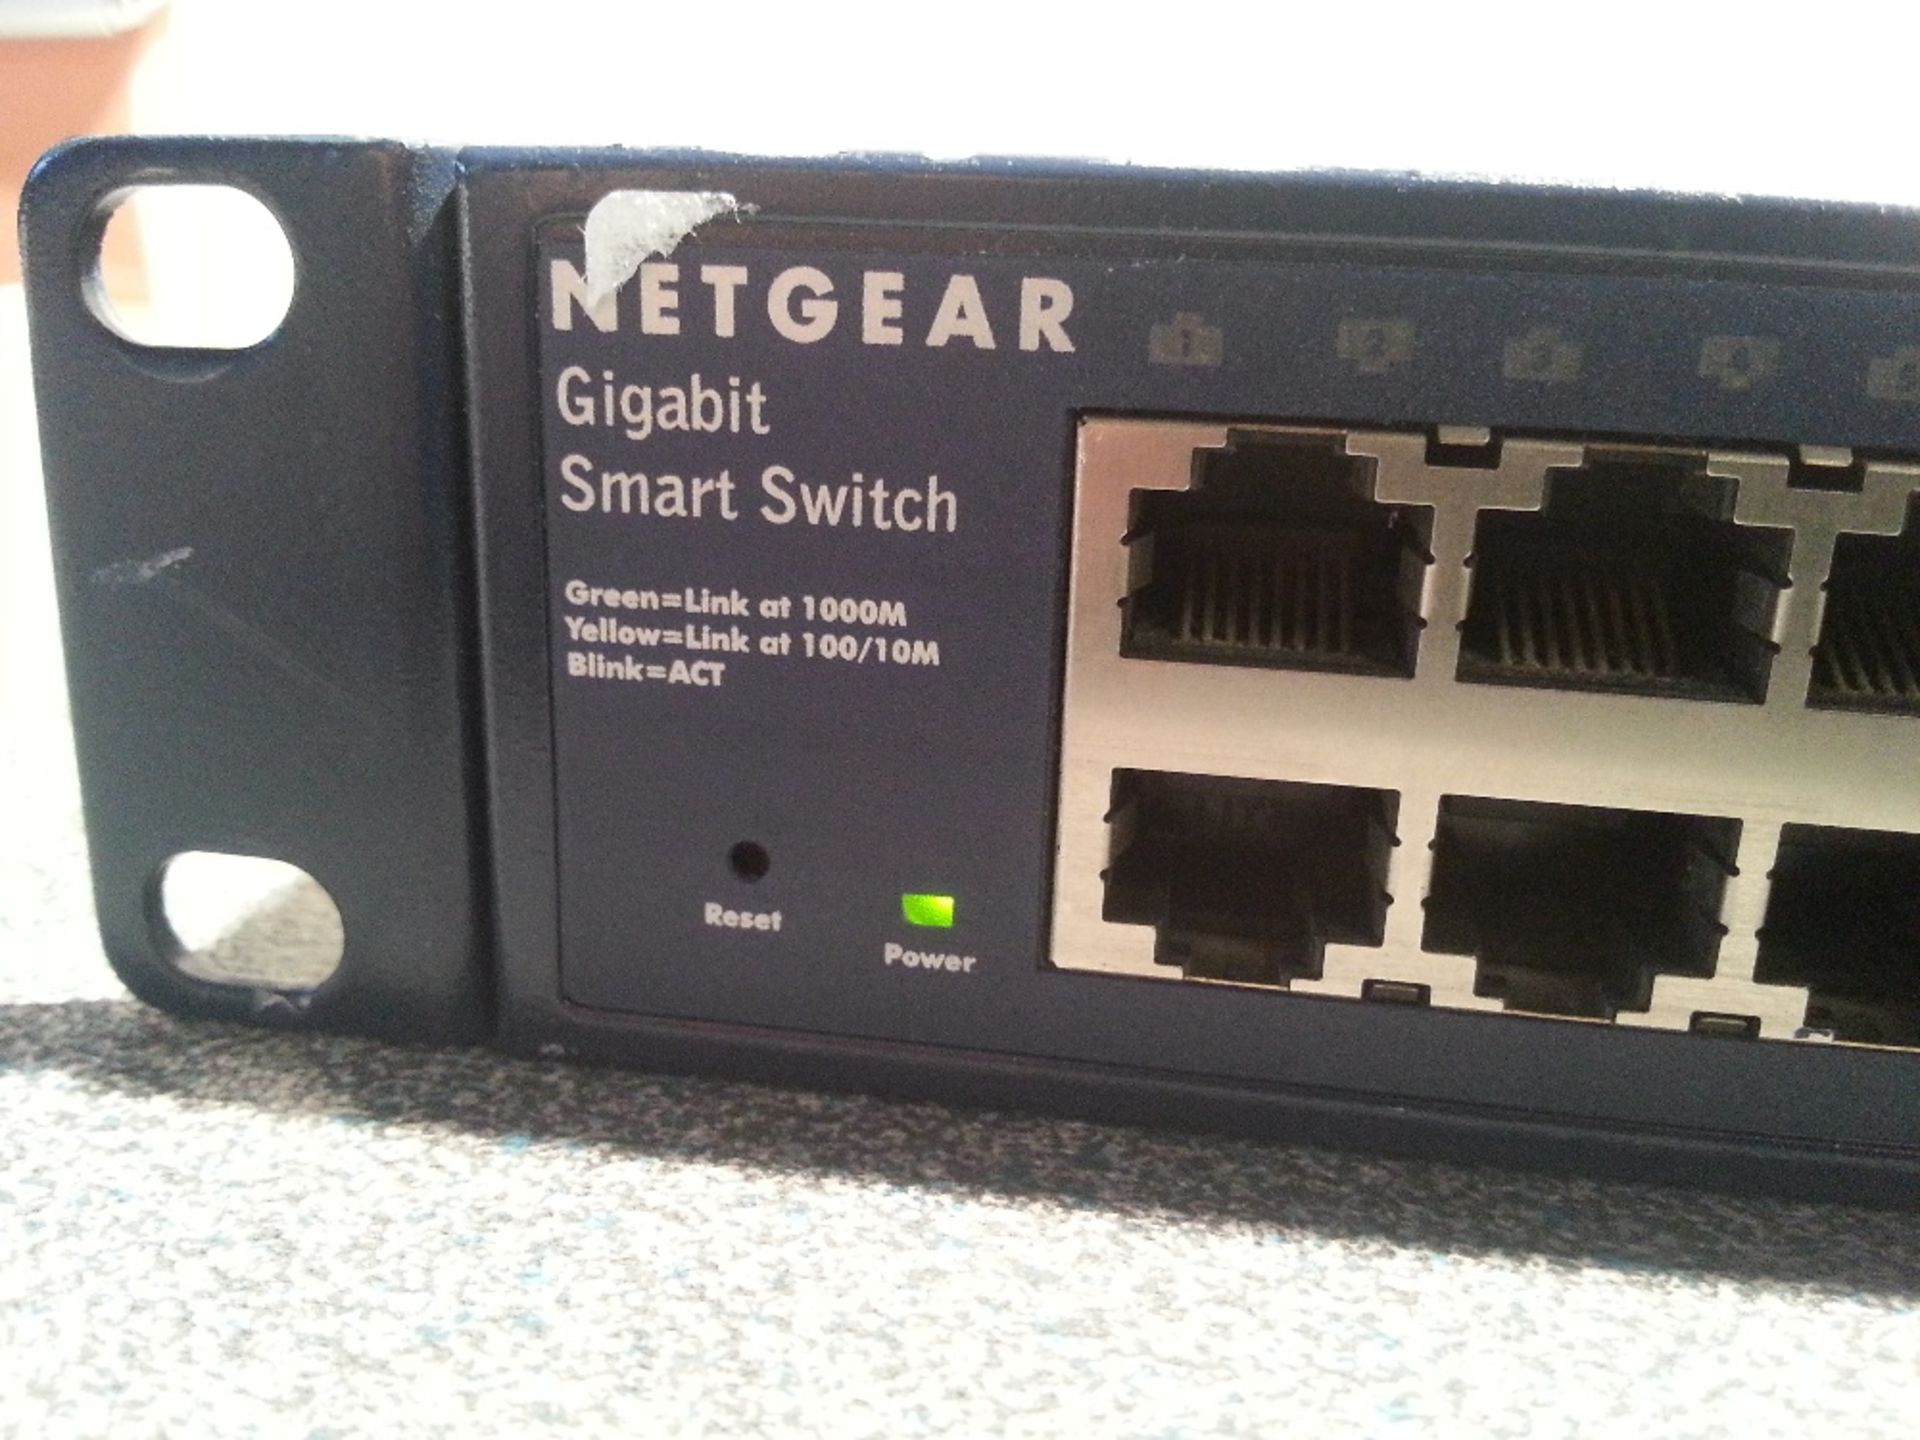 NETGEAR GS748T 48 Port 10/100/1000 Switch - 1U Rackmount - Missing Rack Ear - Powers on - Image 2 of 4